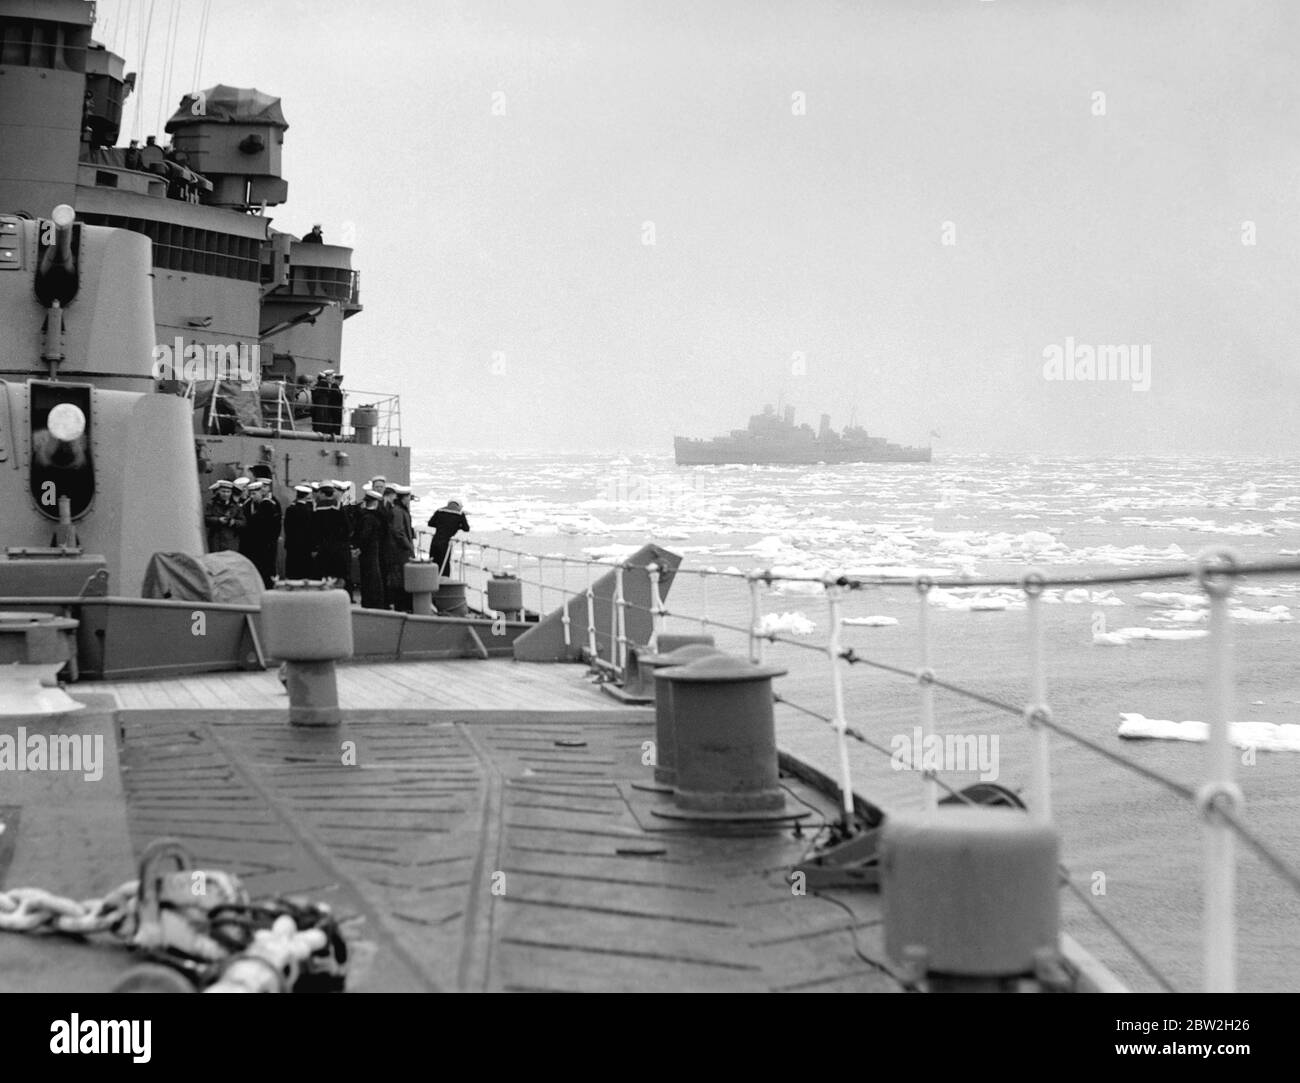 Die Königliche Tour durch Kanada und die USA von König George VI und Königin Elizabeth , 1939 die Königliche Marine Kreuzer , HMS Glasgow folgt HMS Southampton, wie sie den König und die Königin über den Atlantik auf ihrer Königlichen Tour durch Kanada und die USA begleiten . Stockfoto